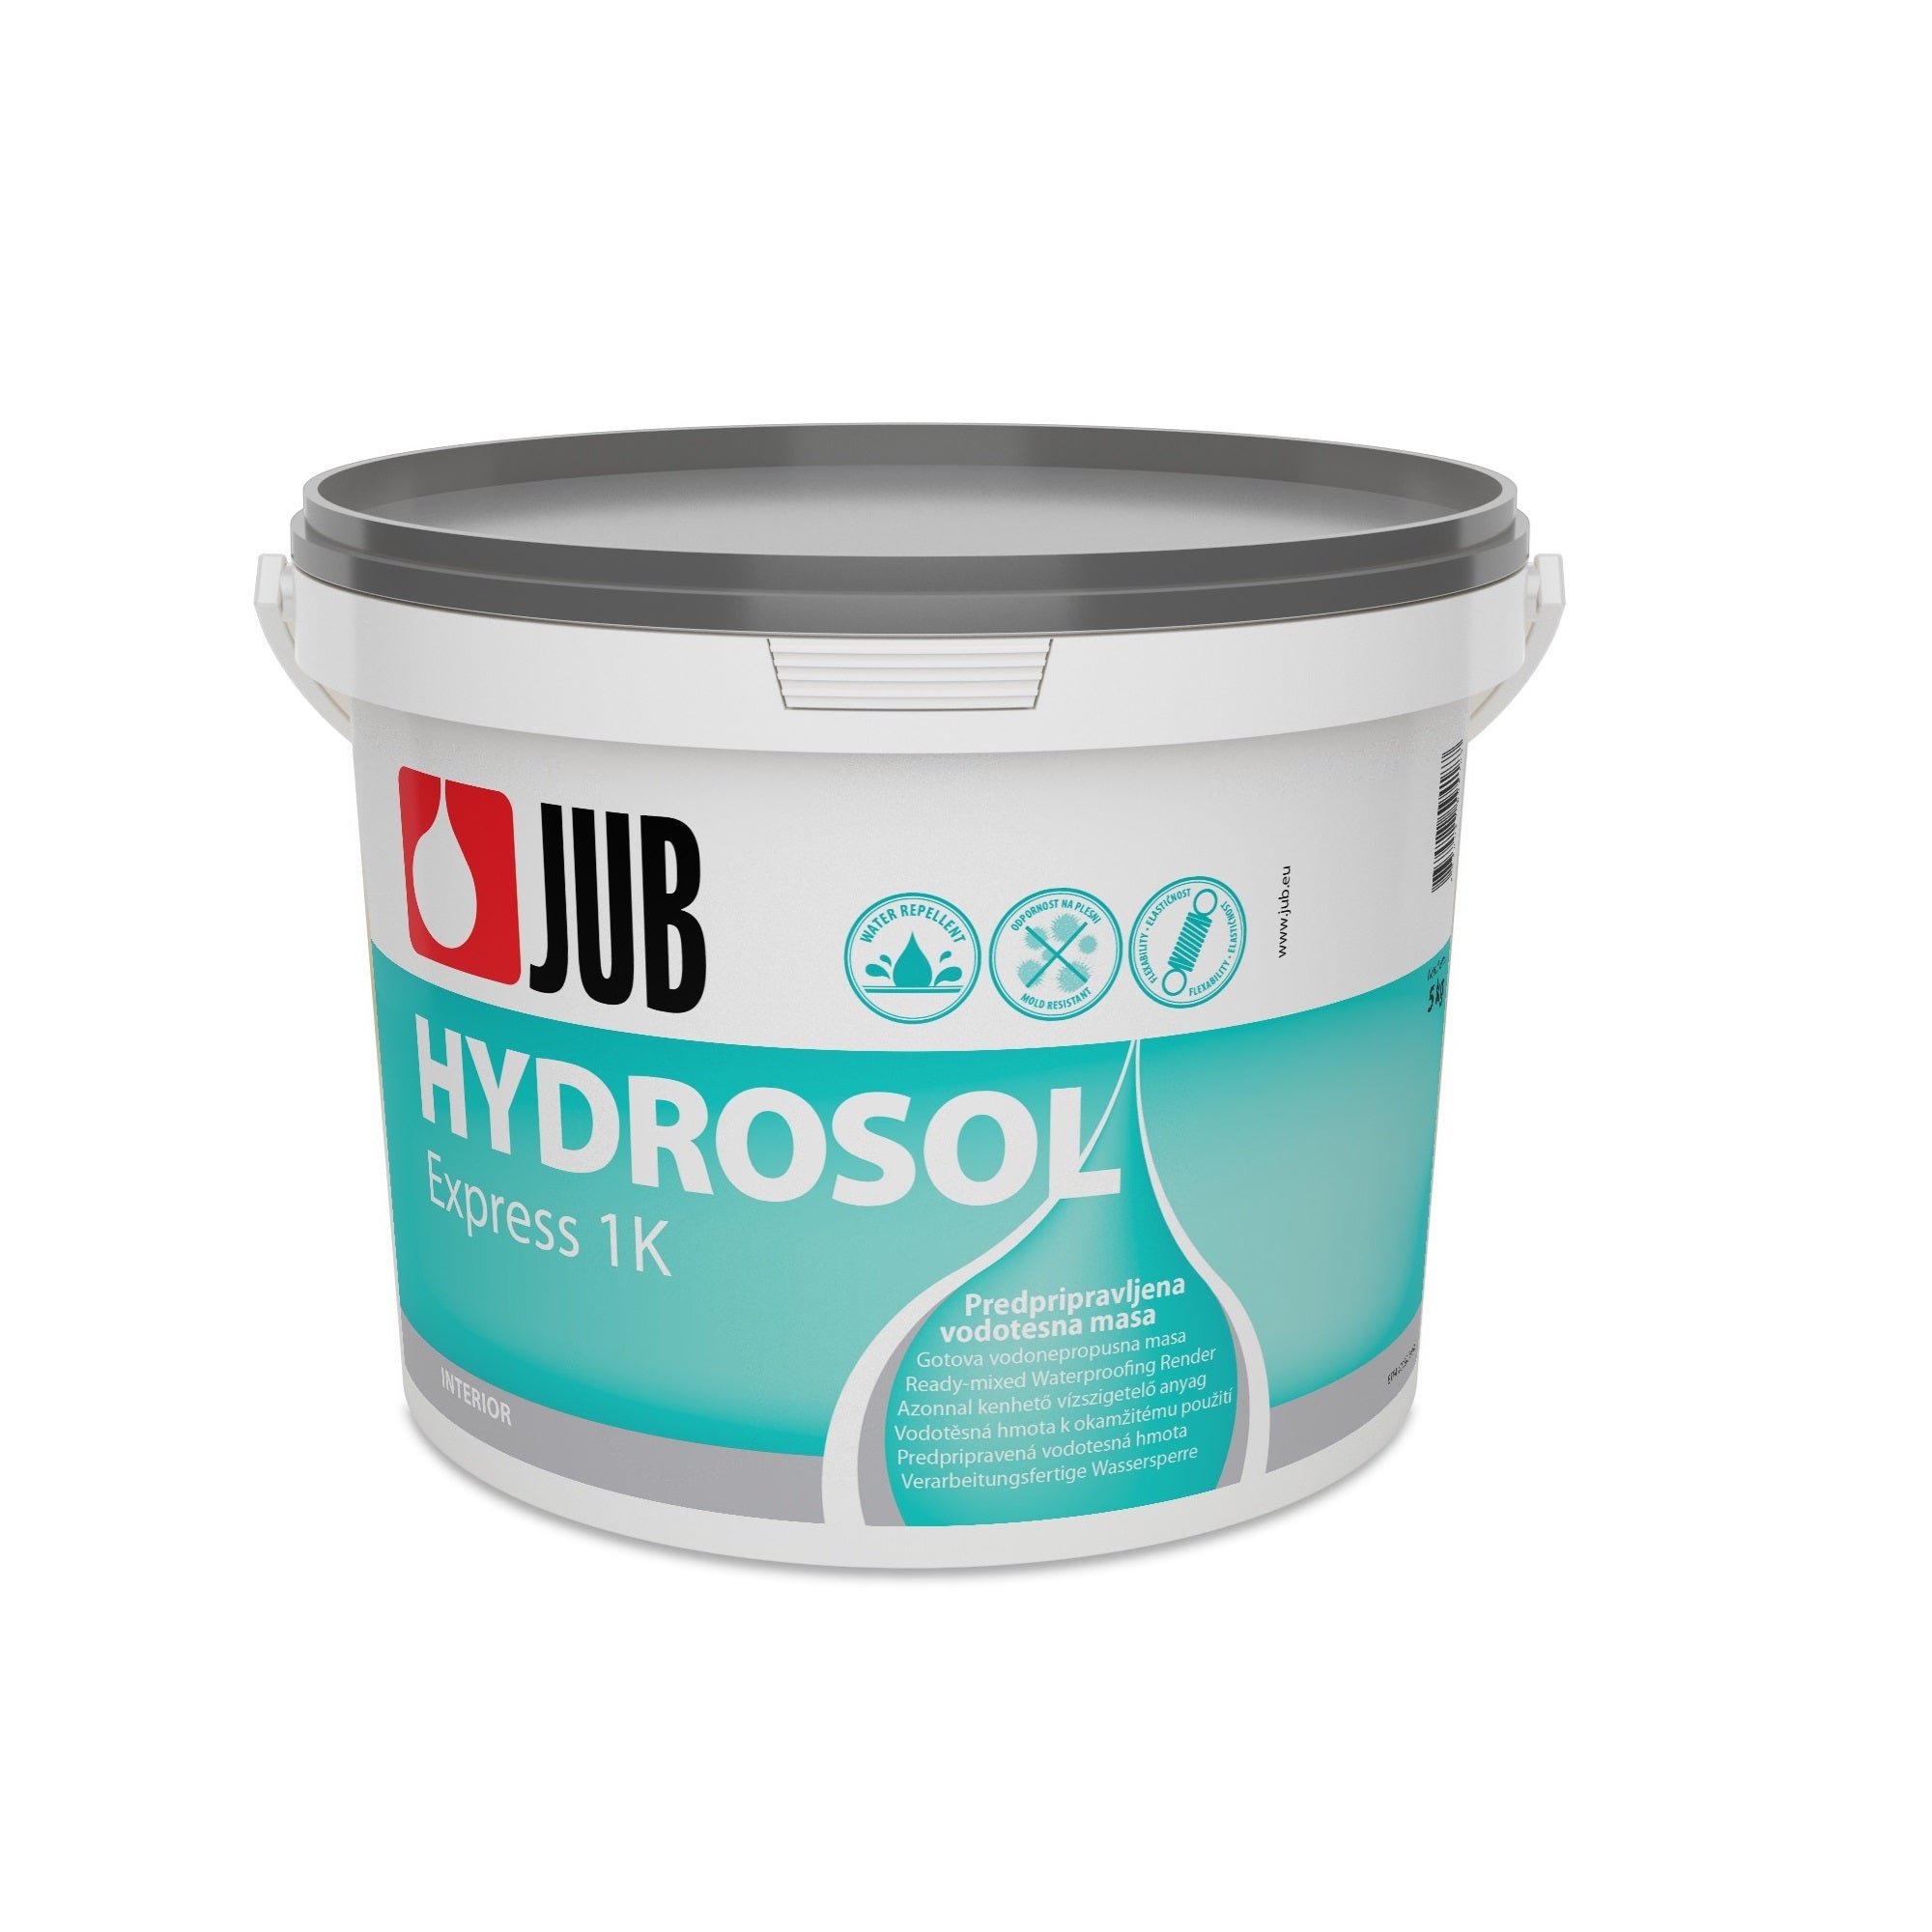 JUB HYDROSOL Express 1K elastická hydroizolace 5 kg